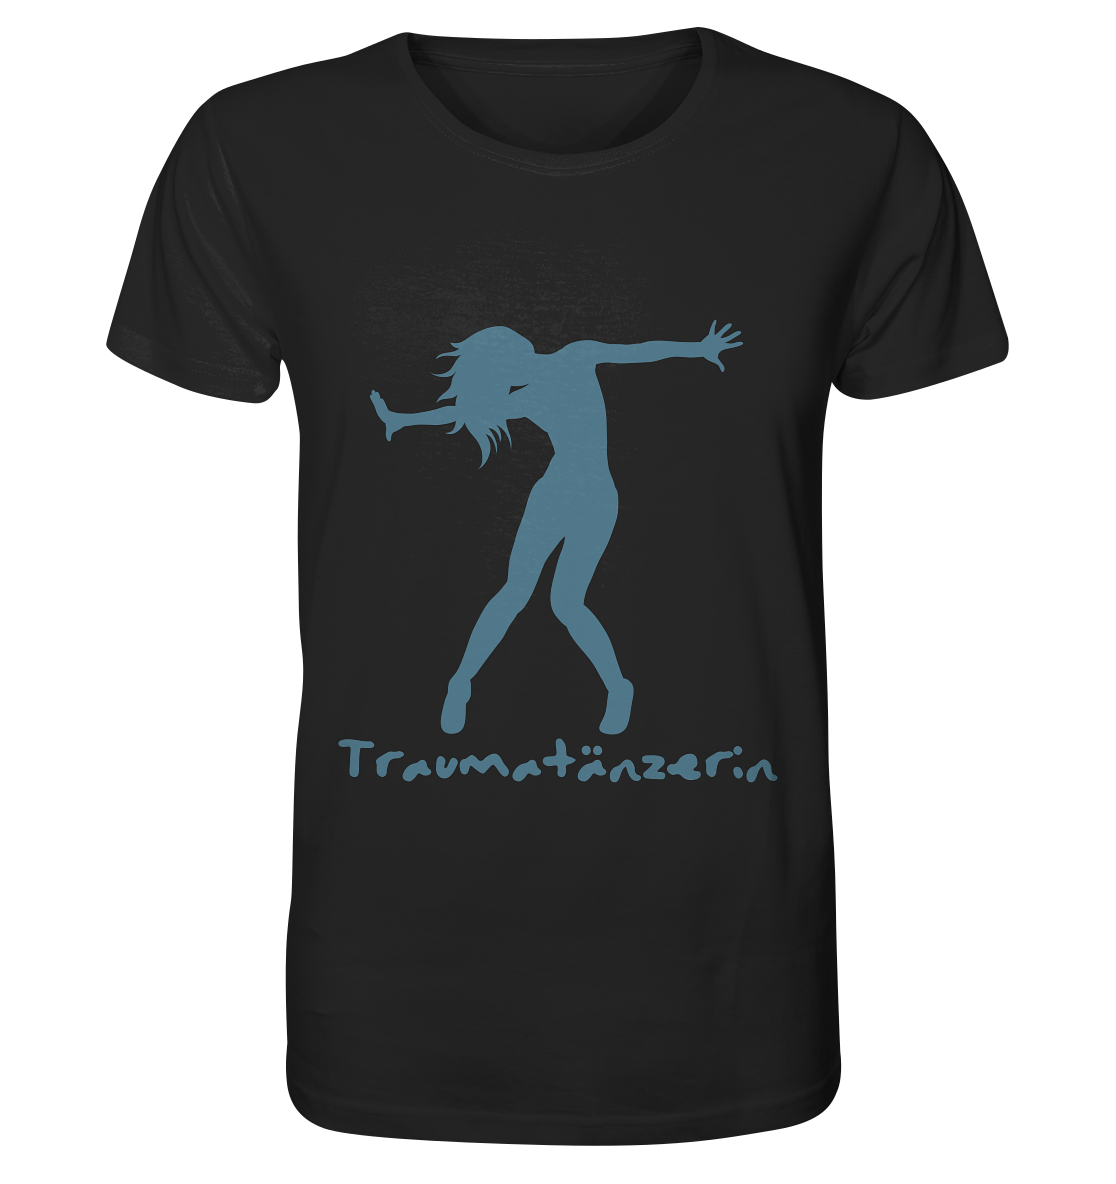 Eine Traumatänzerin - T-Shirt mit Spruch | Mental Health von Artbookings mit dem Wort traumasisin darauf.